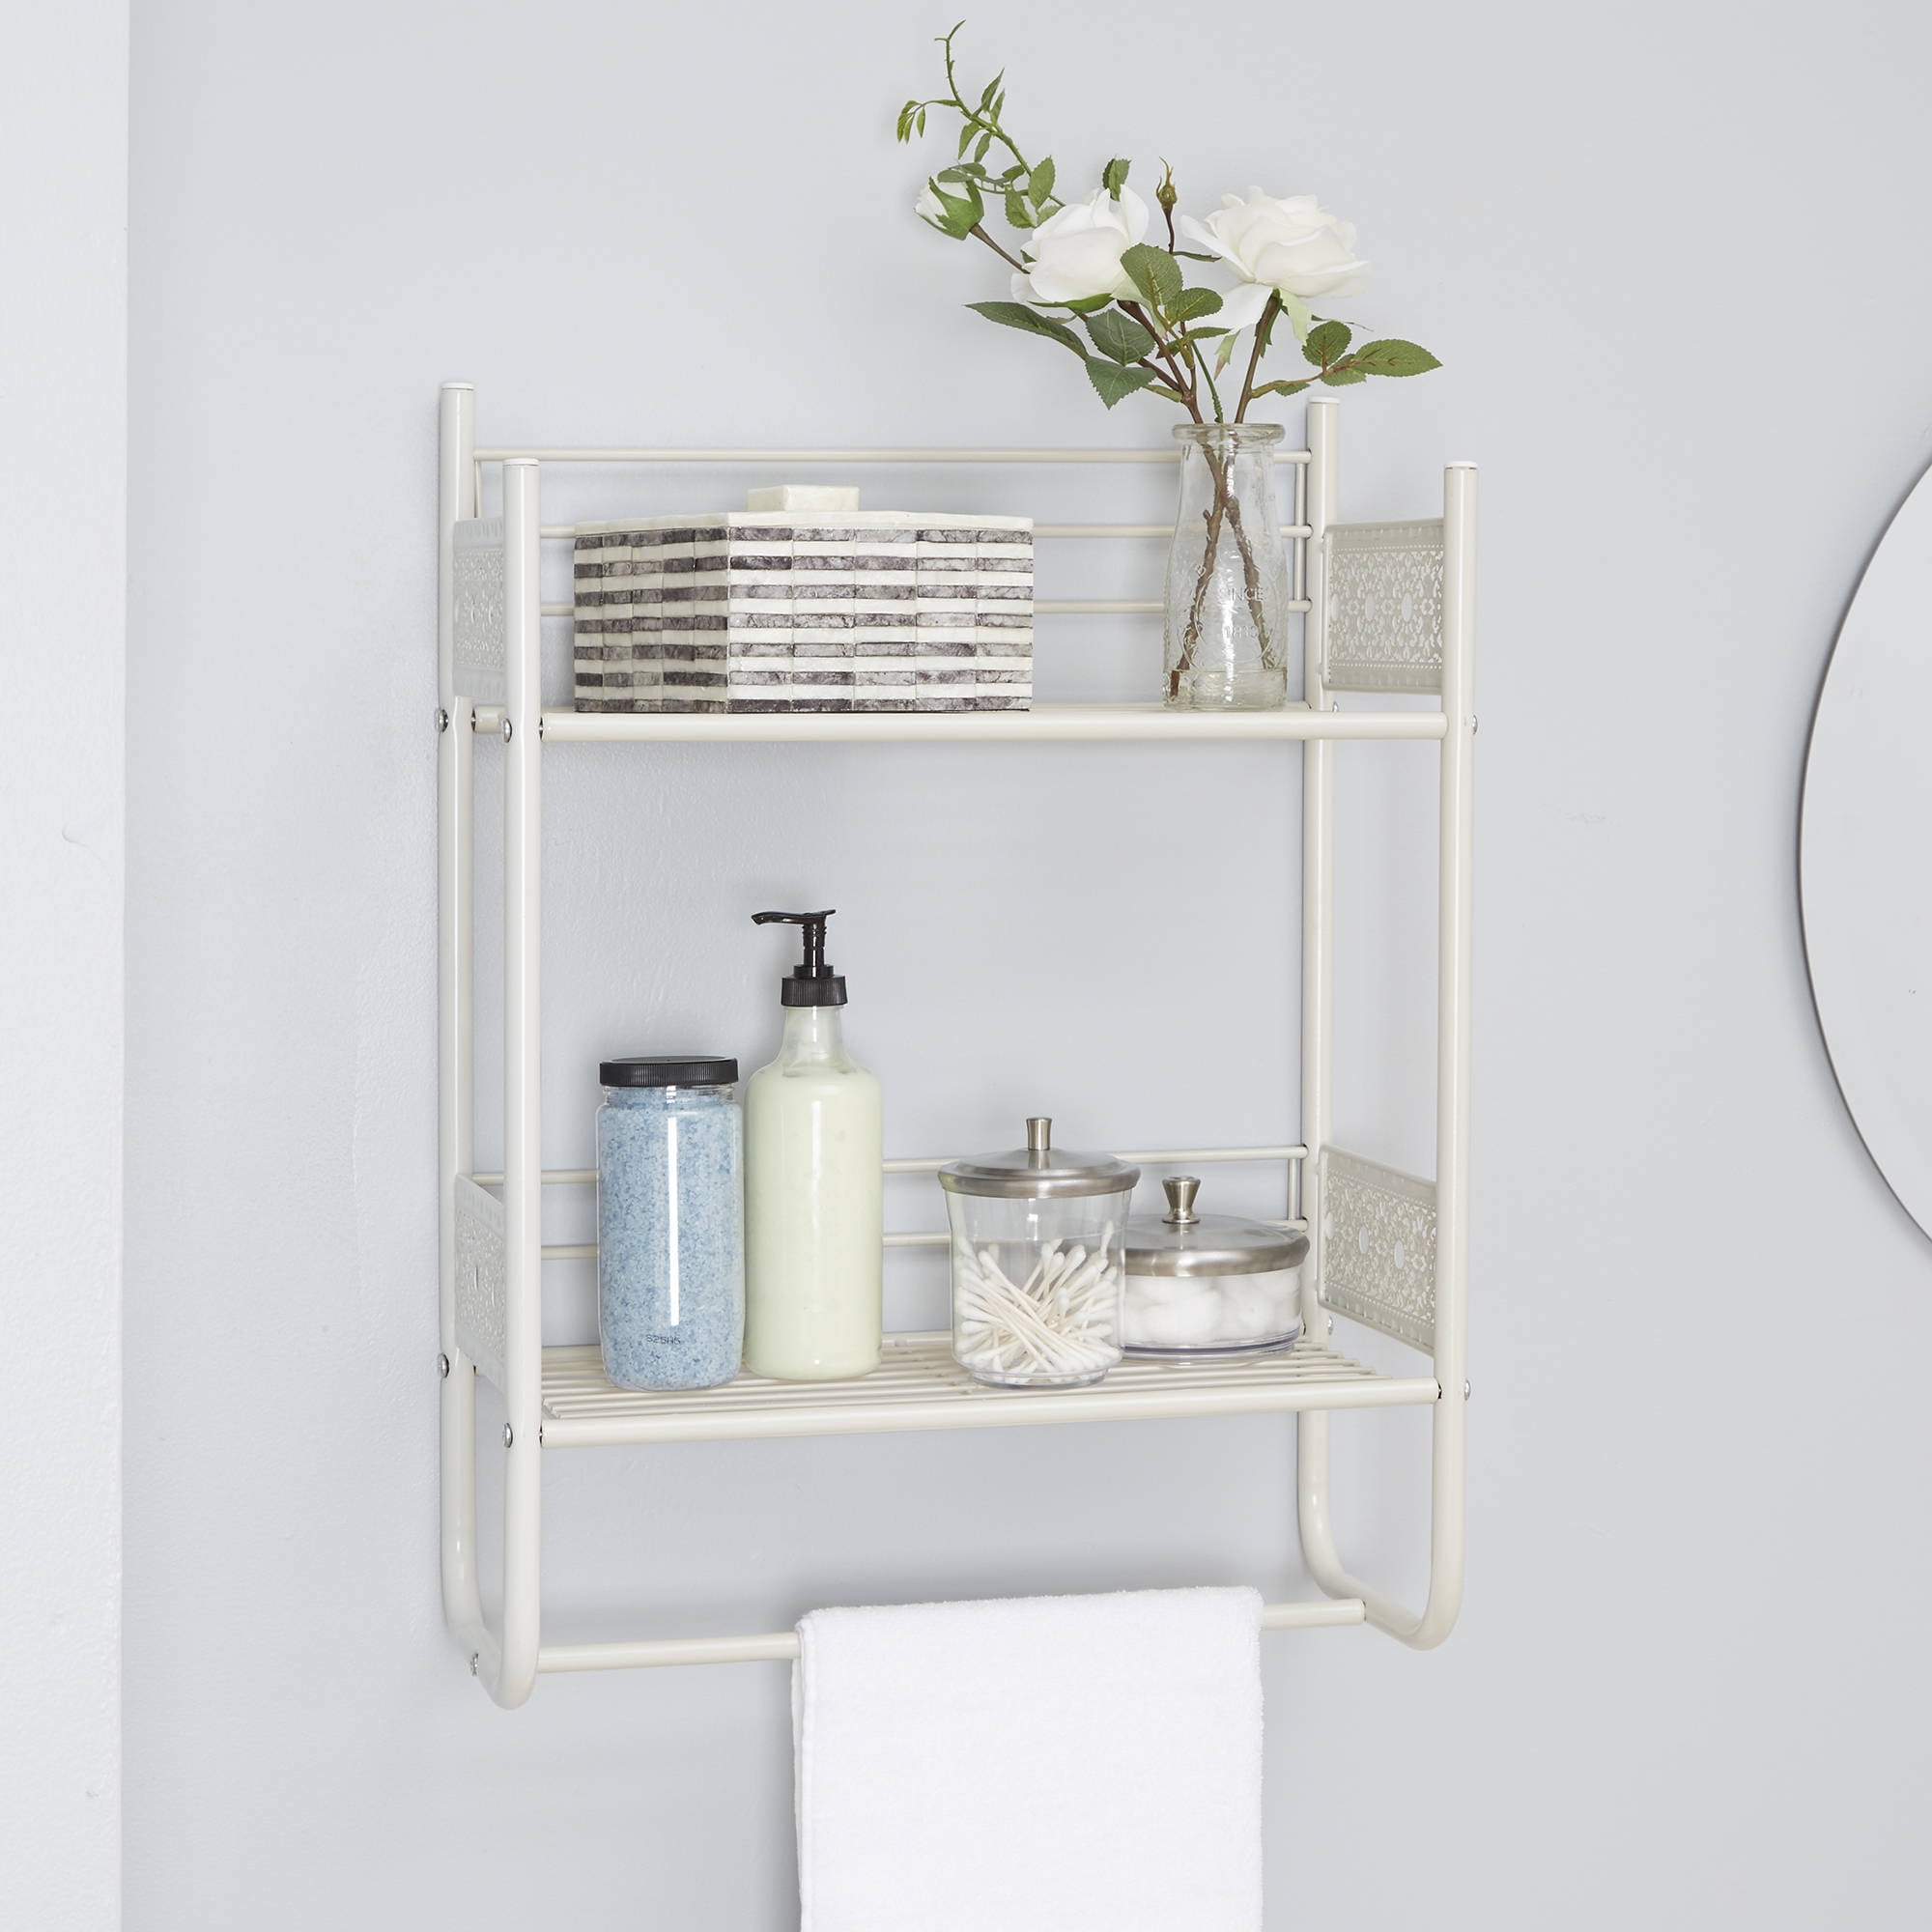 RIPONI Bathroom wall shelf By Geelli